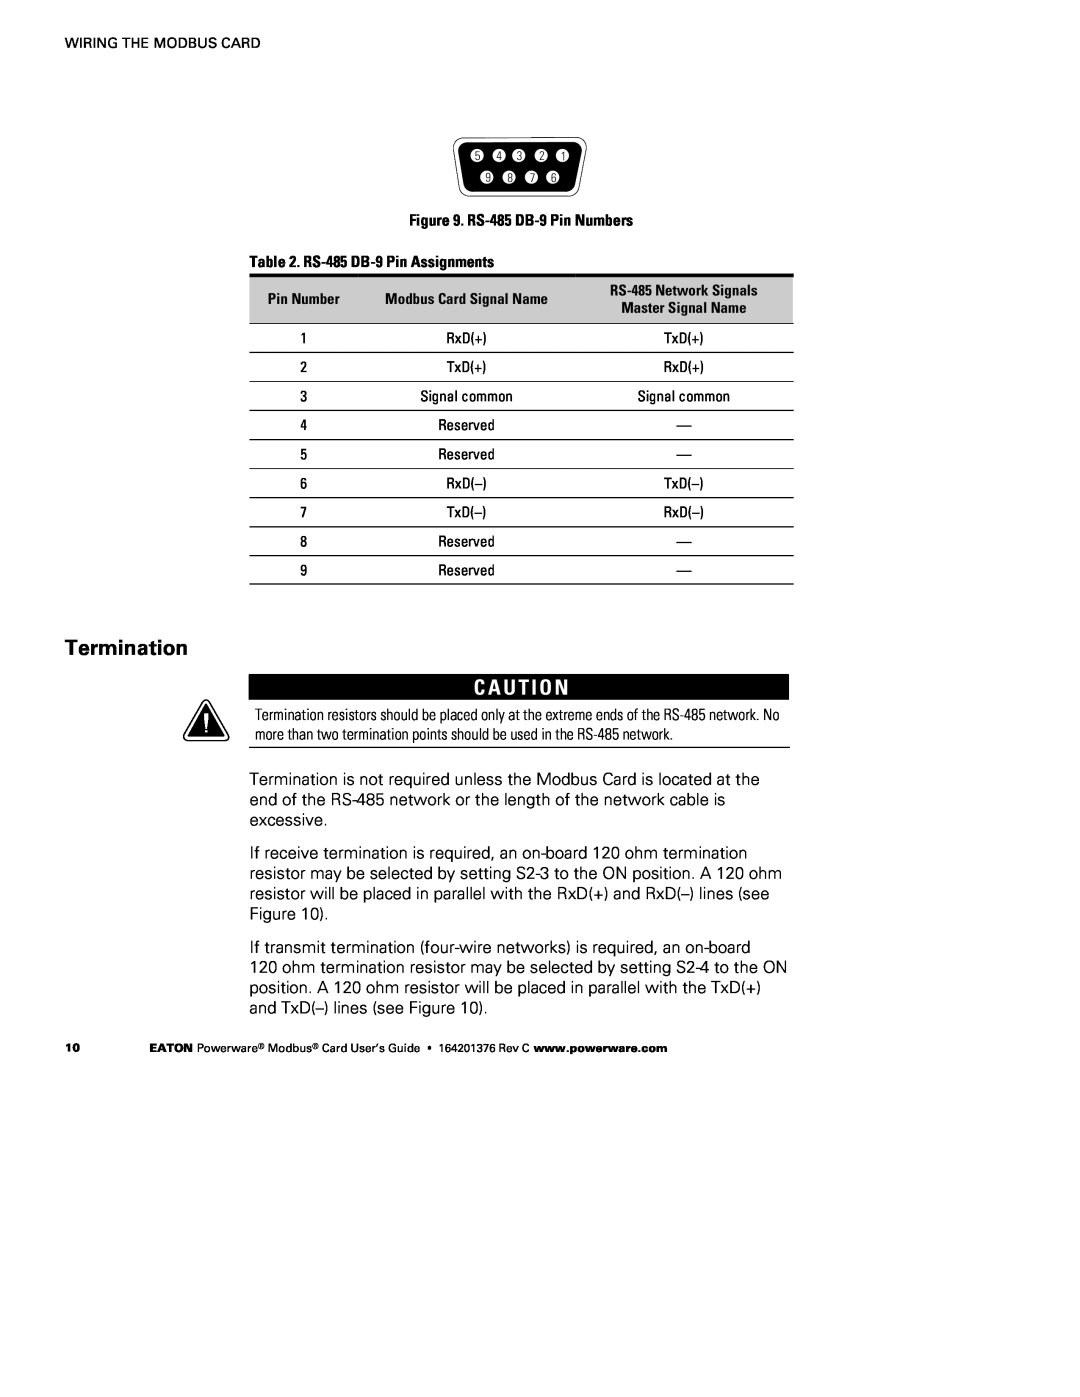 Powerware FCC 15 manual Termination, C A U T I O N 